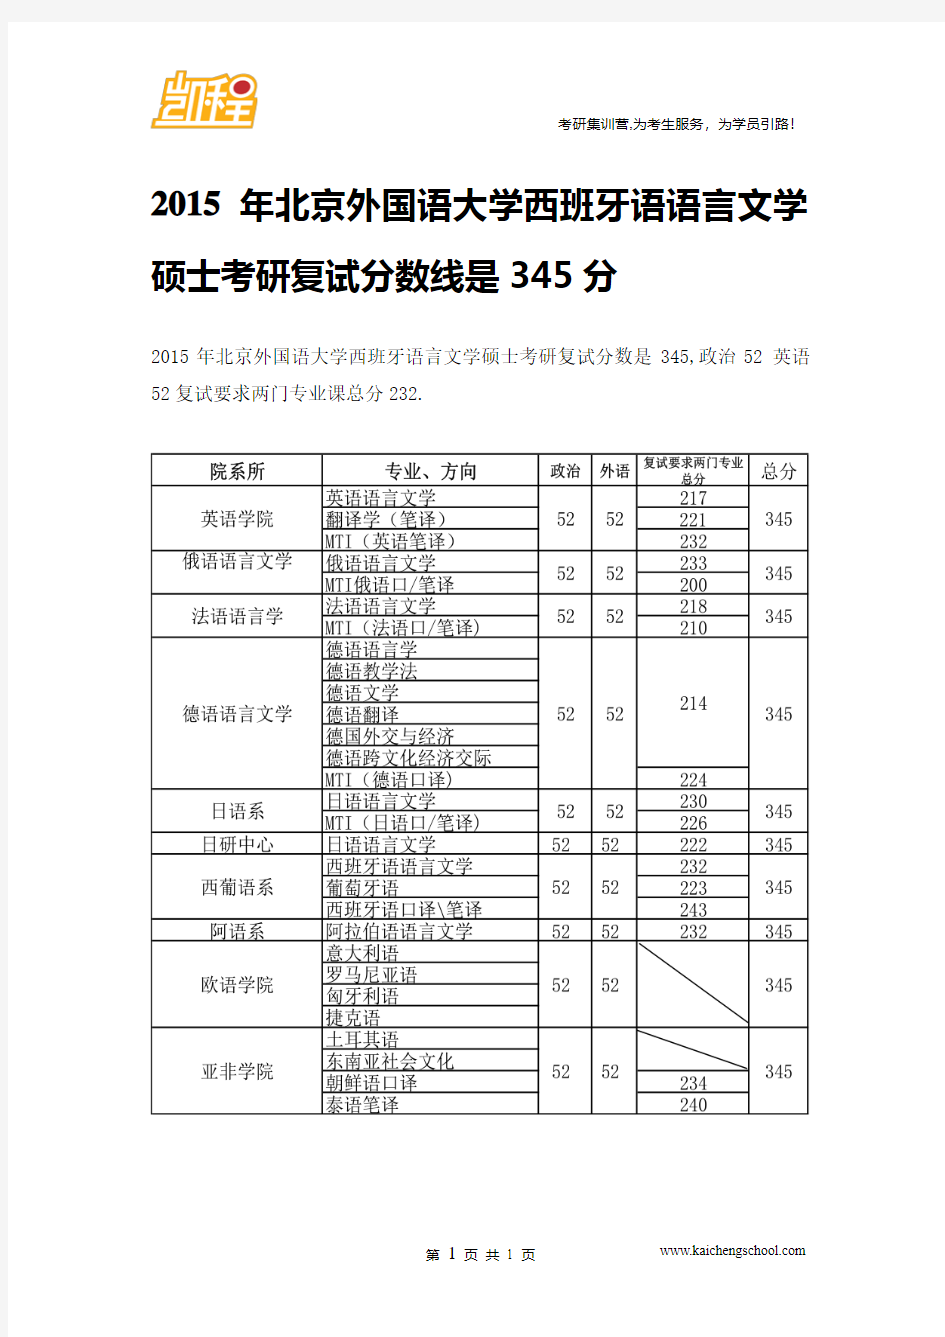 2015年北京外国语大学西班牙语语言文学硕士考研复试分数线是345分